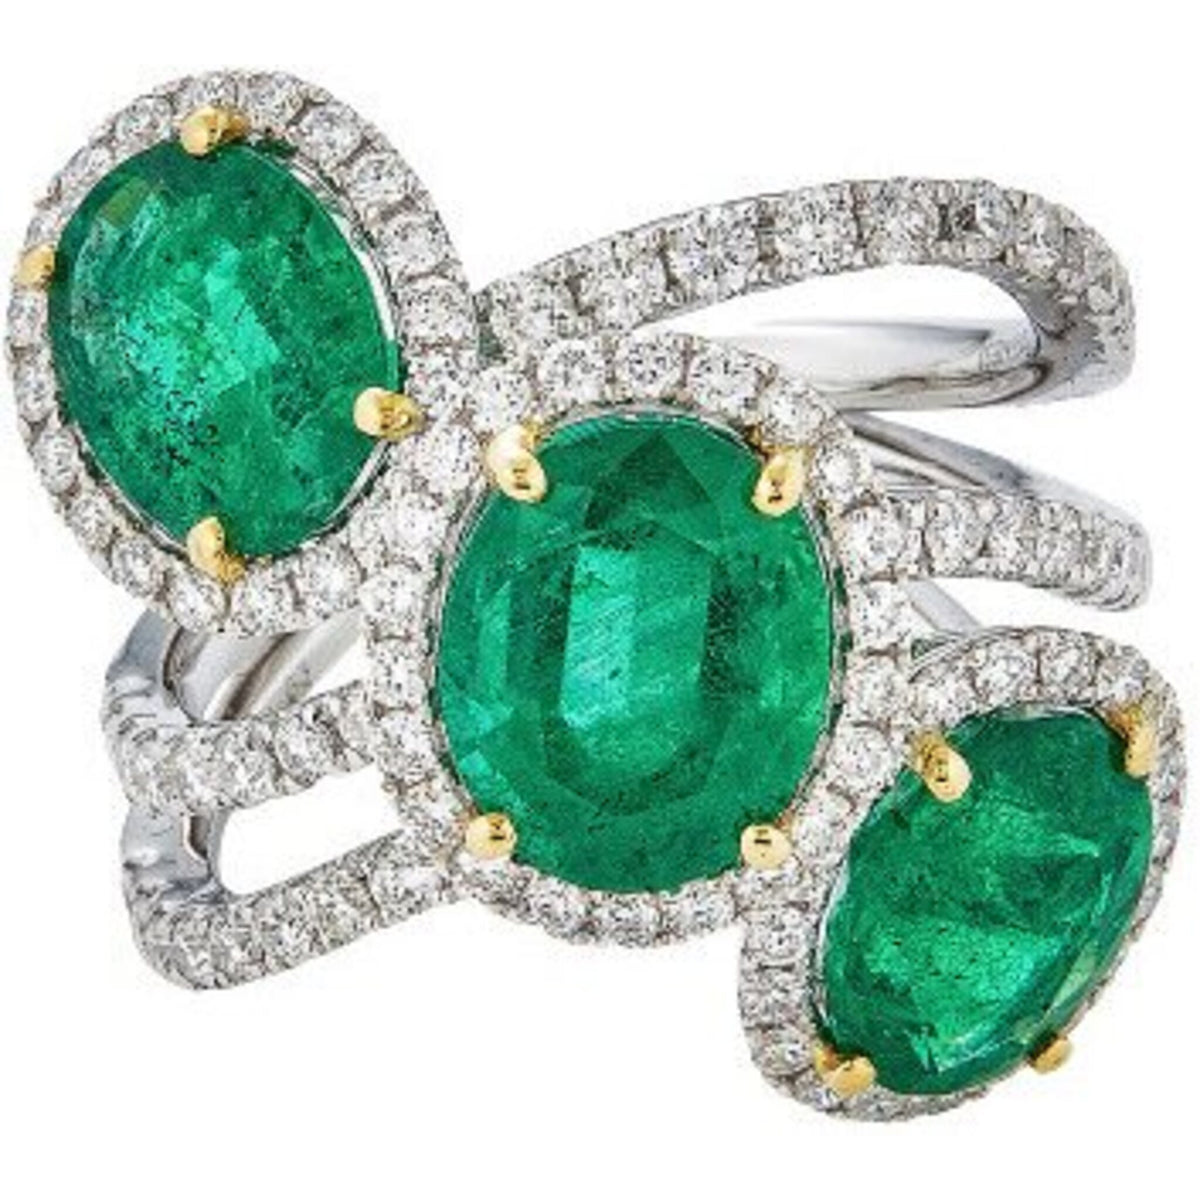 Piranesi - Three Stone Ring in Emerald - 18K White & Yellow Gold